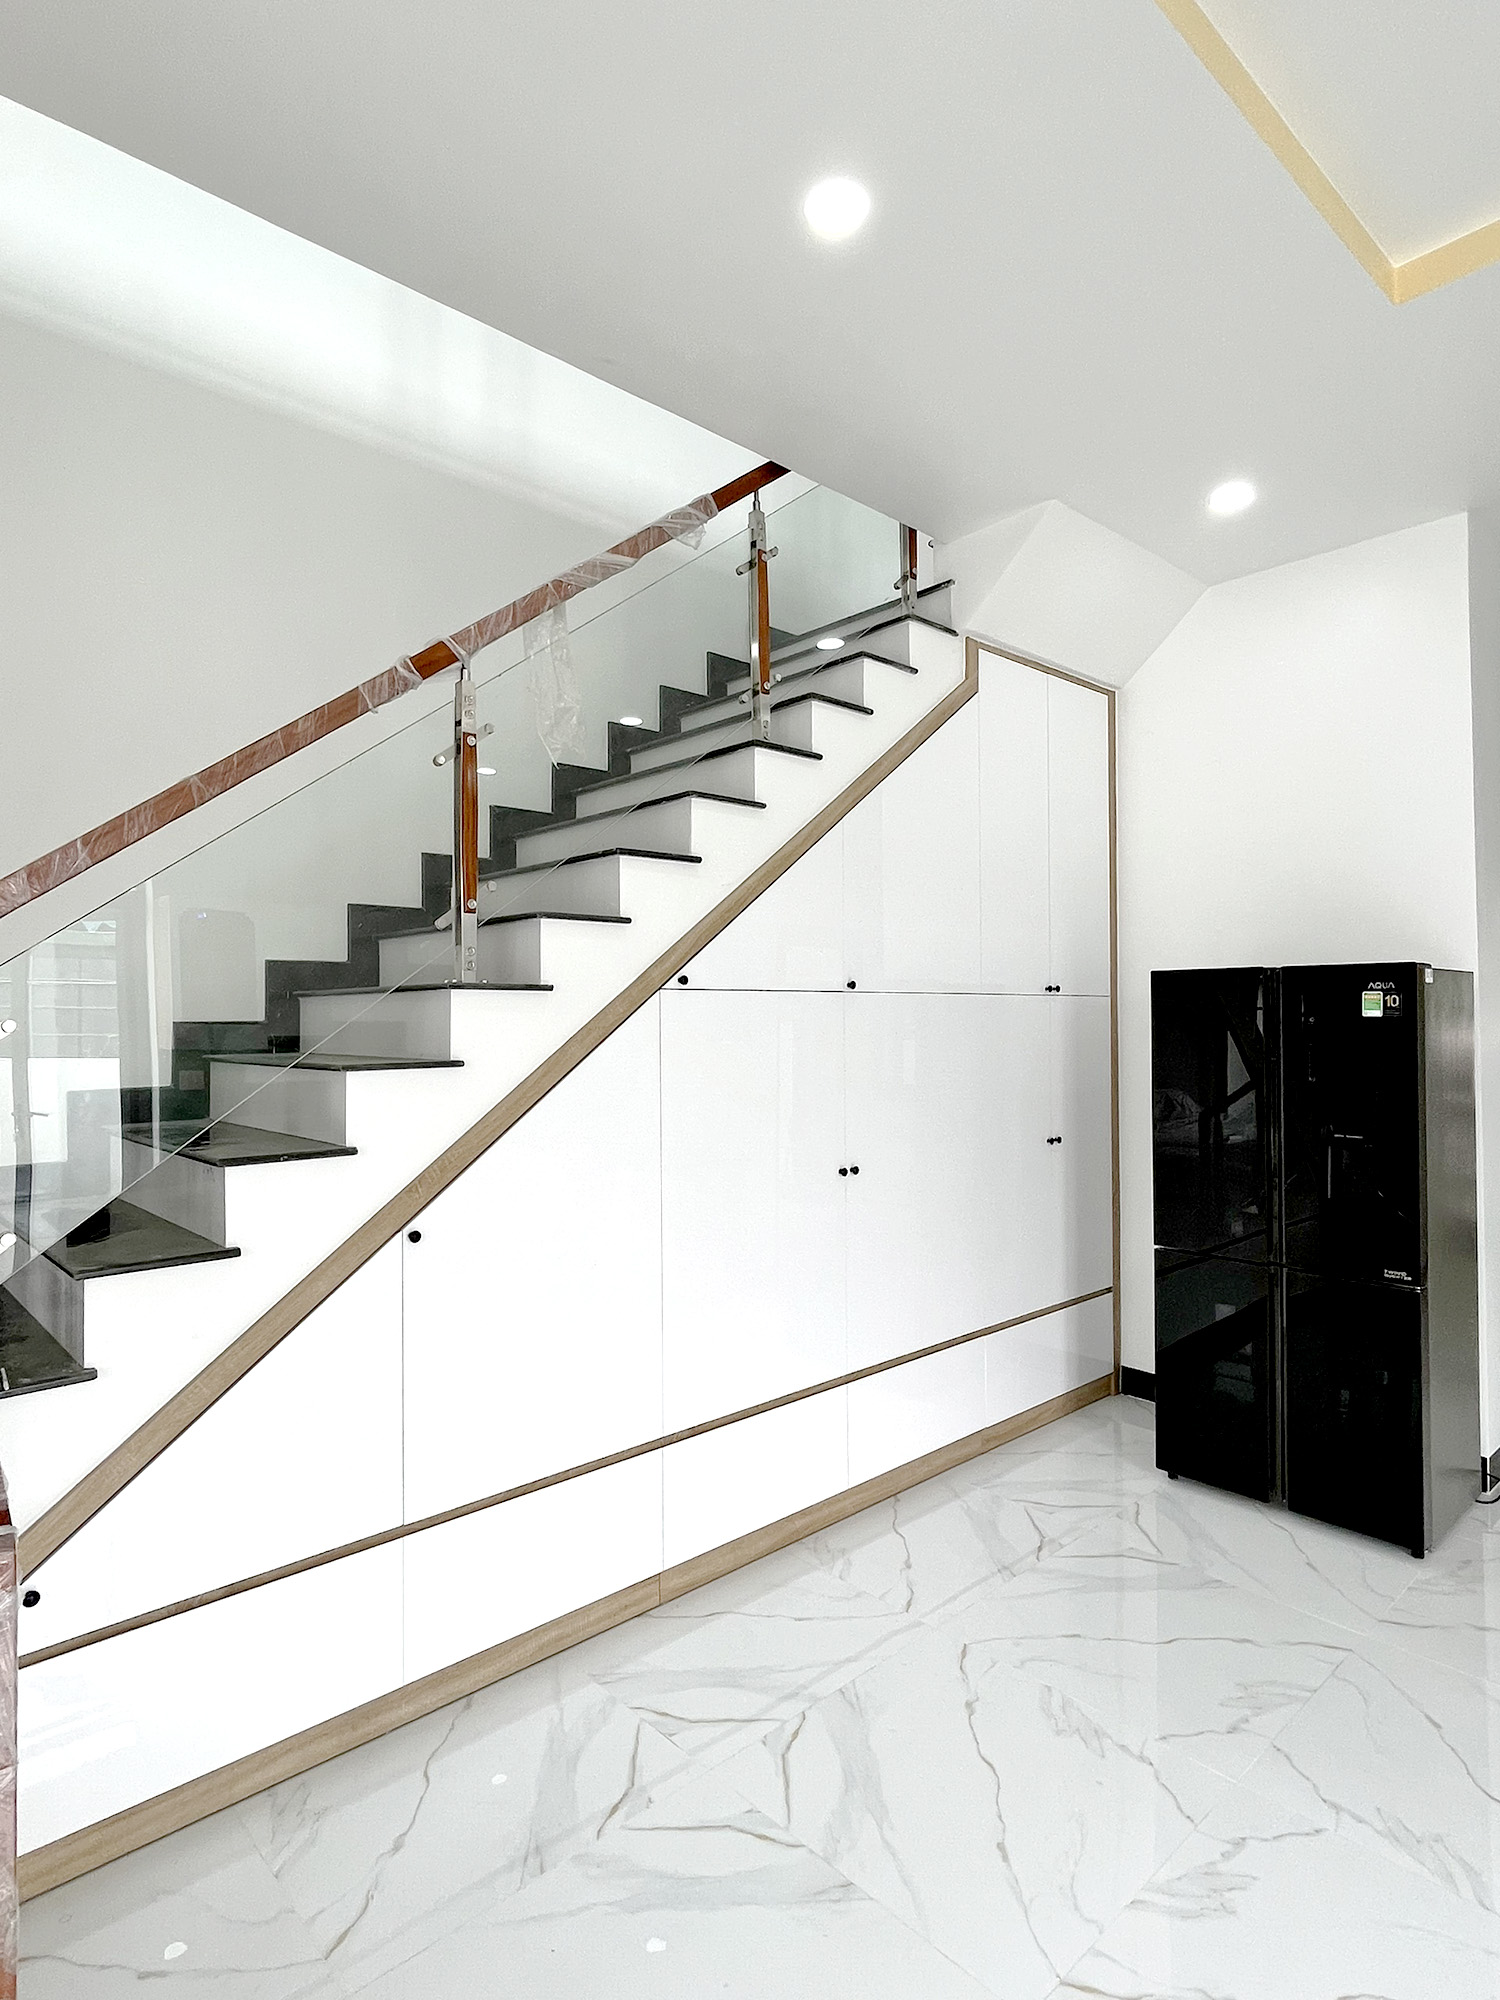 Hoàn thiện nội thất cầu thang, phòng bếp tầng trệt Nhà phố Đồng Nai phong cách Hiện đại Modern